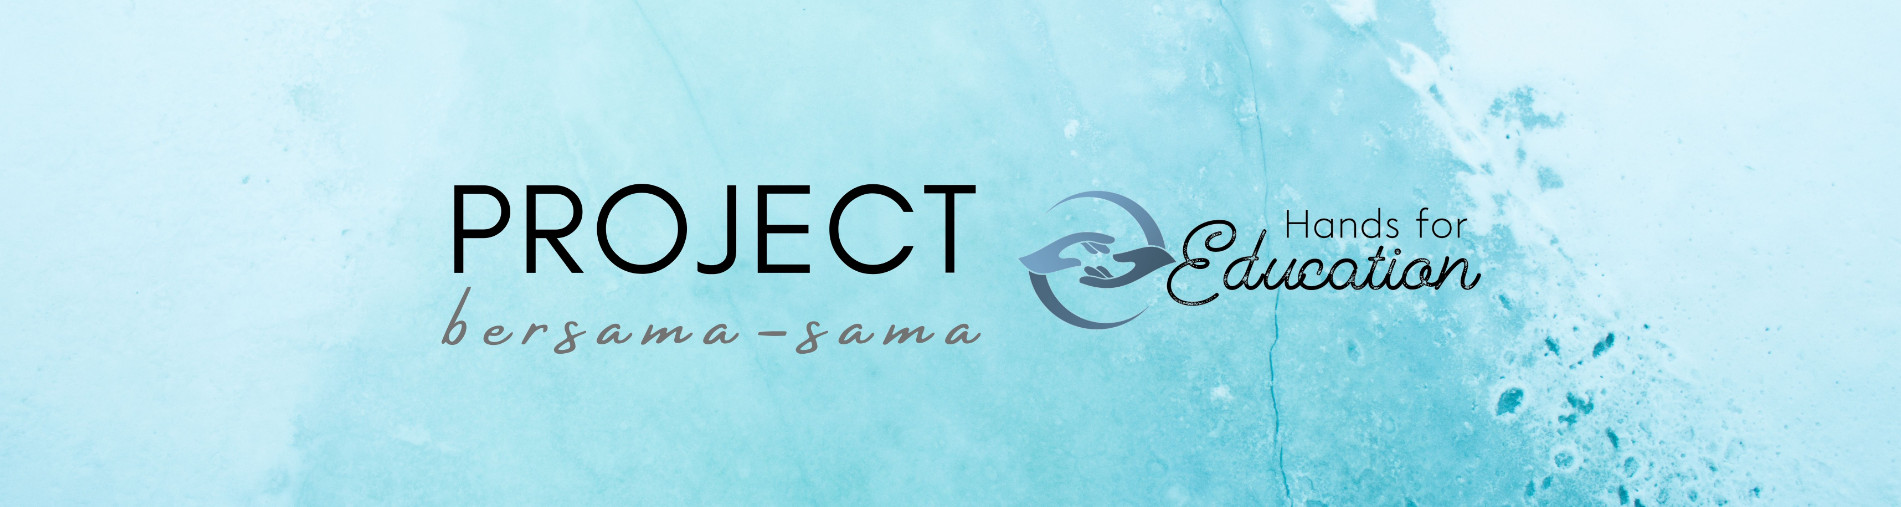 Bersama-sama Project